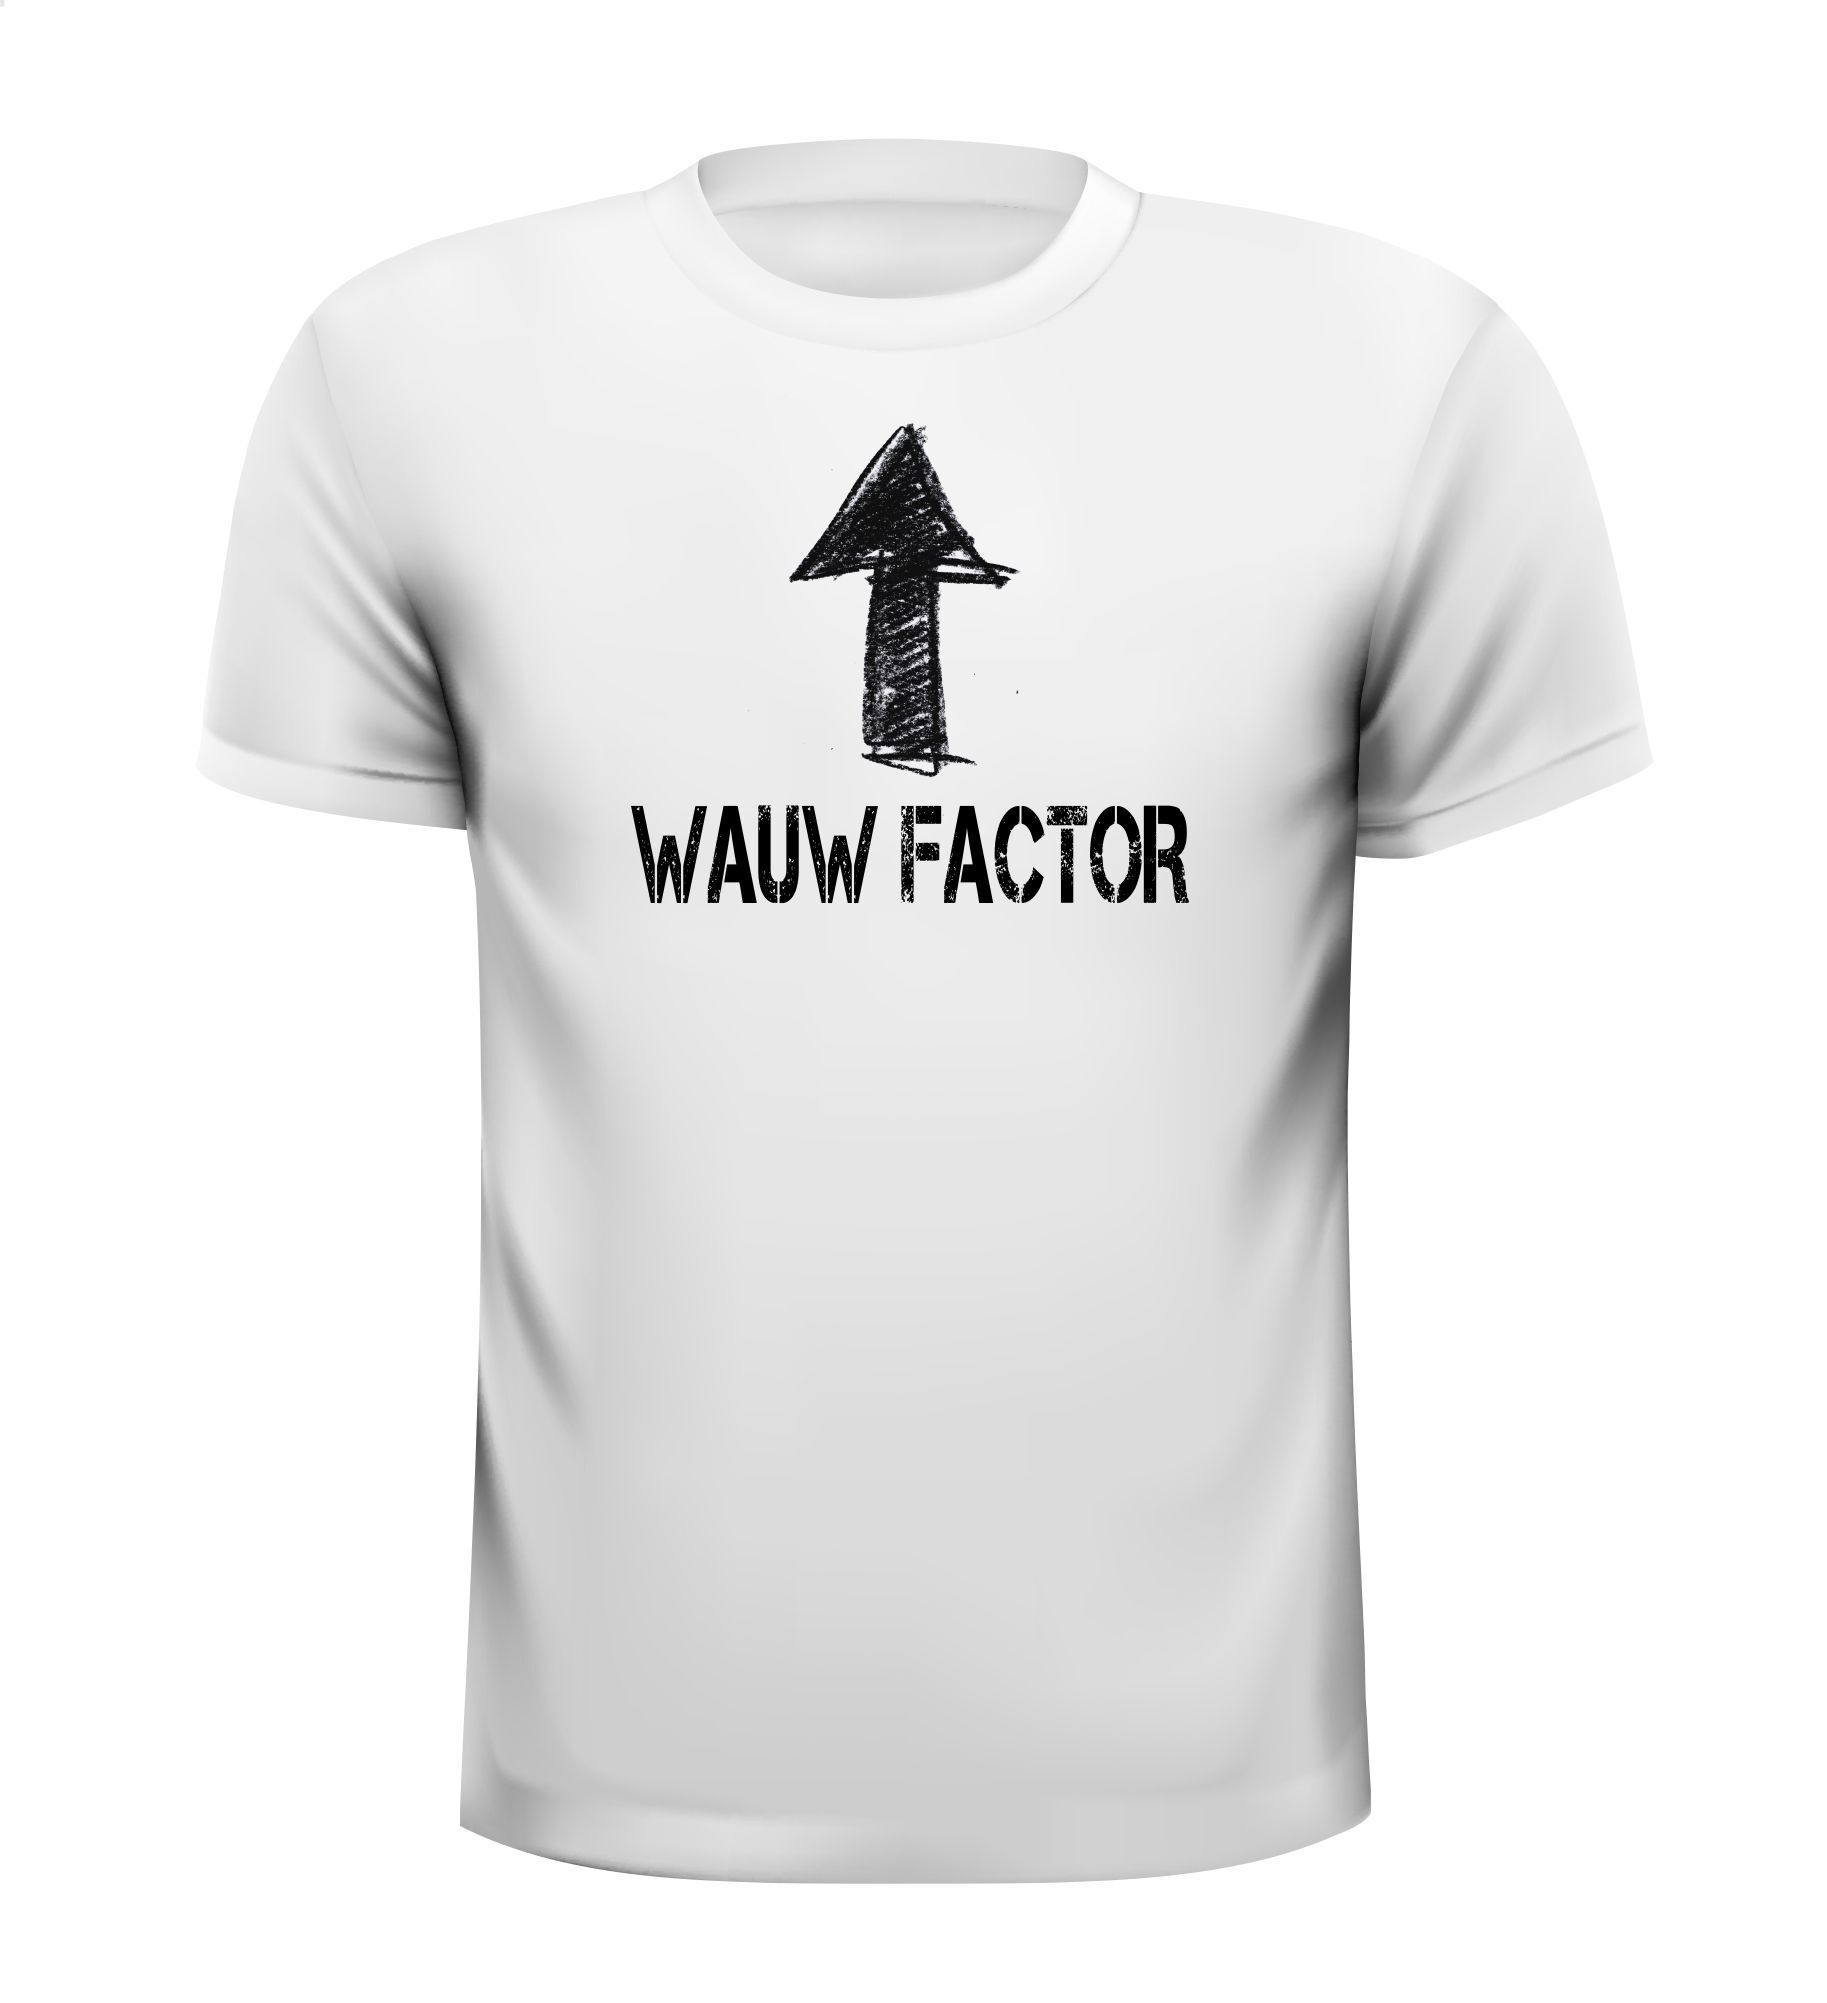 Wauw factor t-shirt